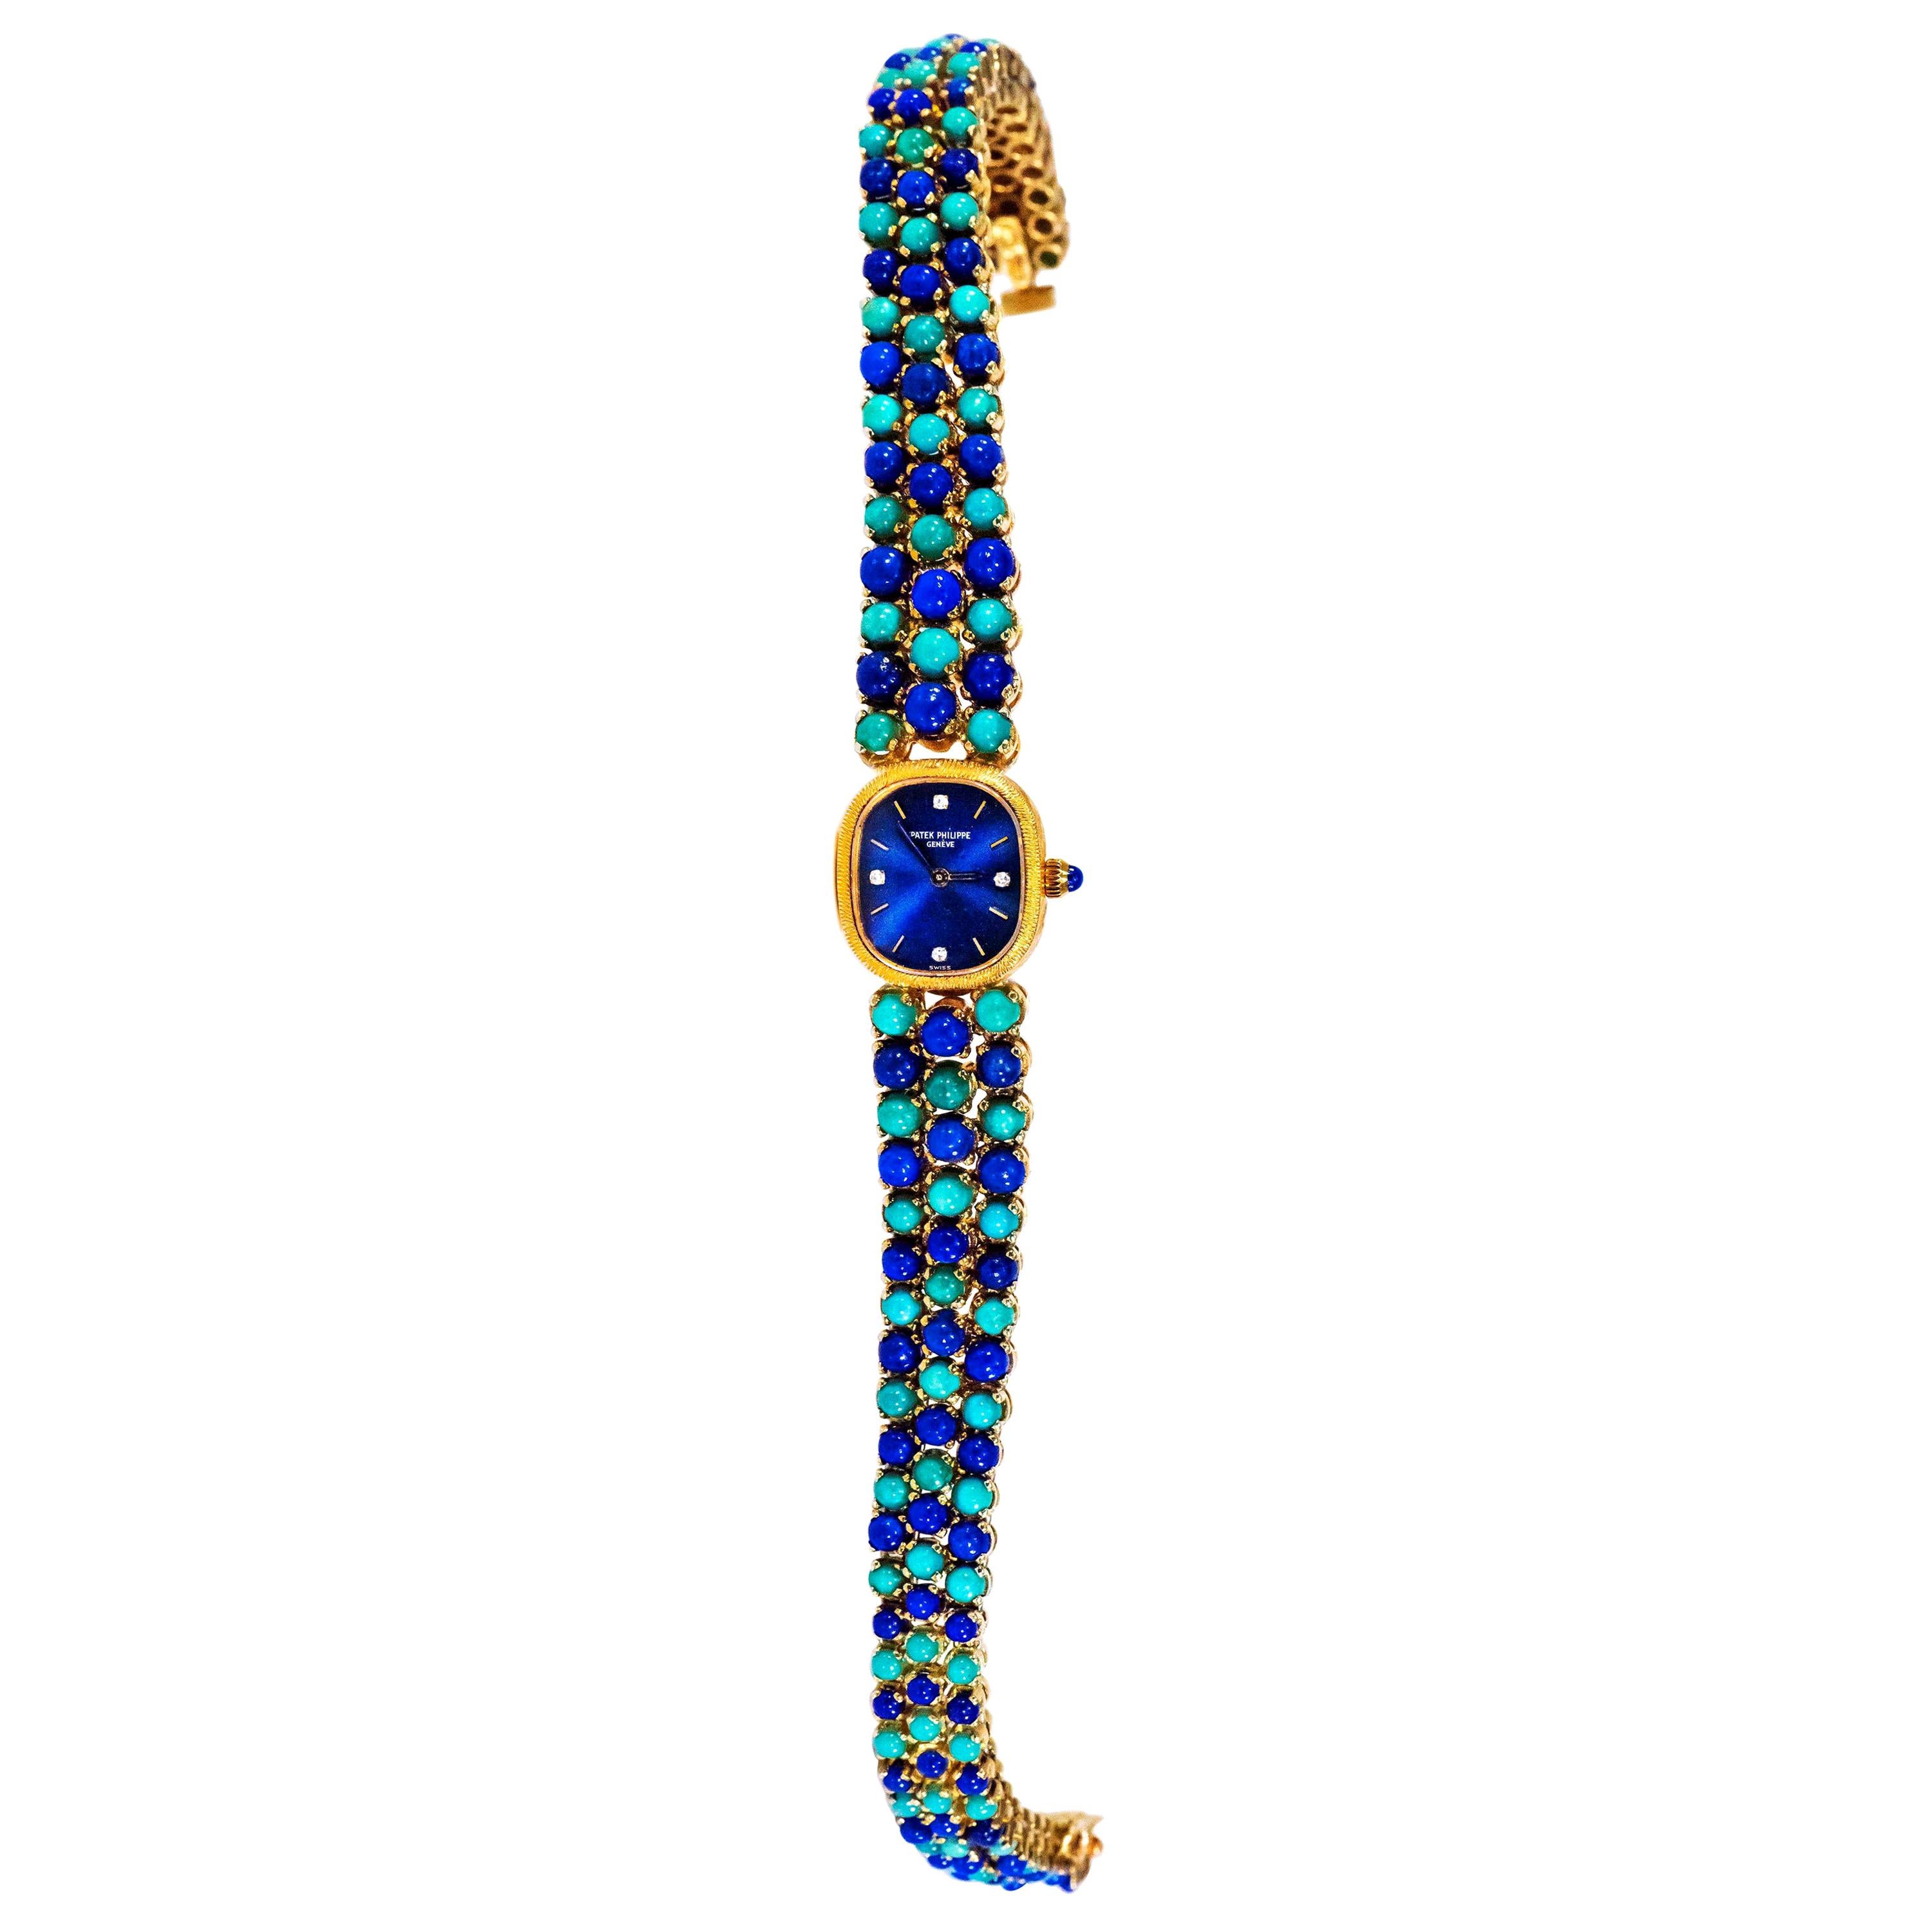 1971 Piece Unique Patek Philippe Lapis Turquoise Diamond Bracelet Watch For Sale